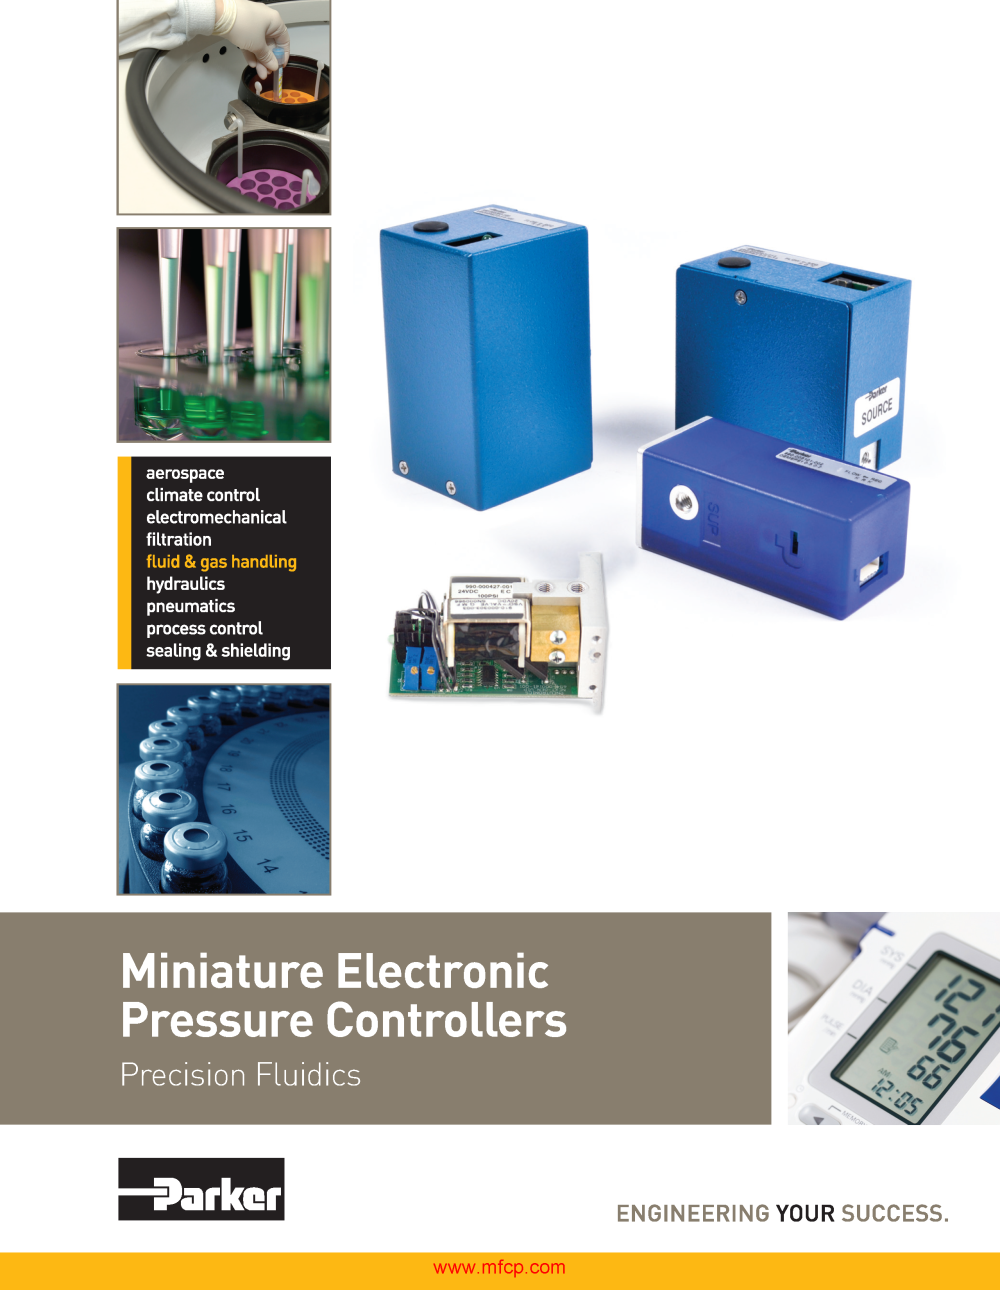 Parker Precision Fluidics Pressure Control Catalog